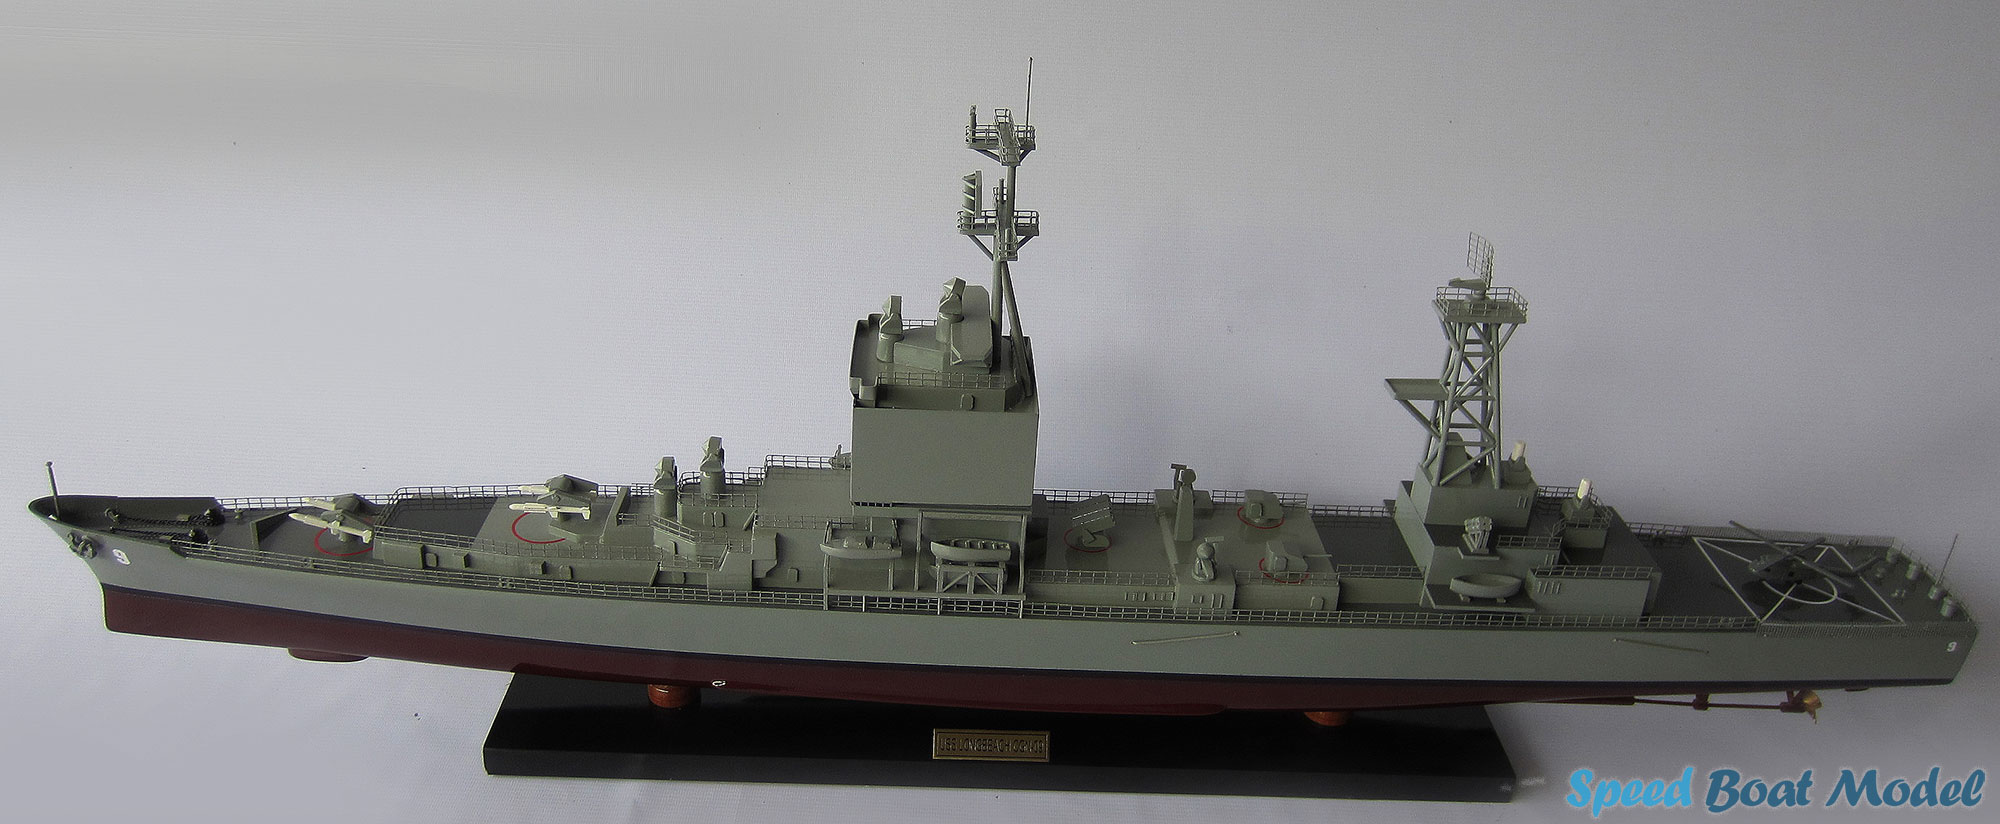 Uss Long Beach Warship Model 39.3"